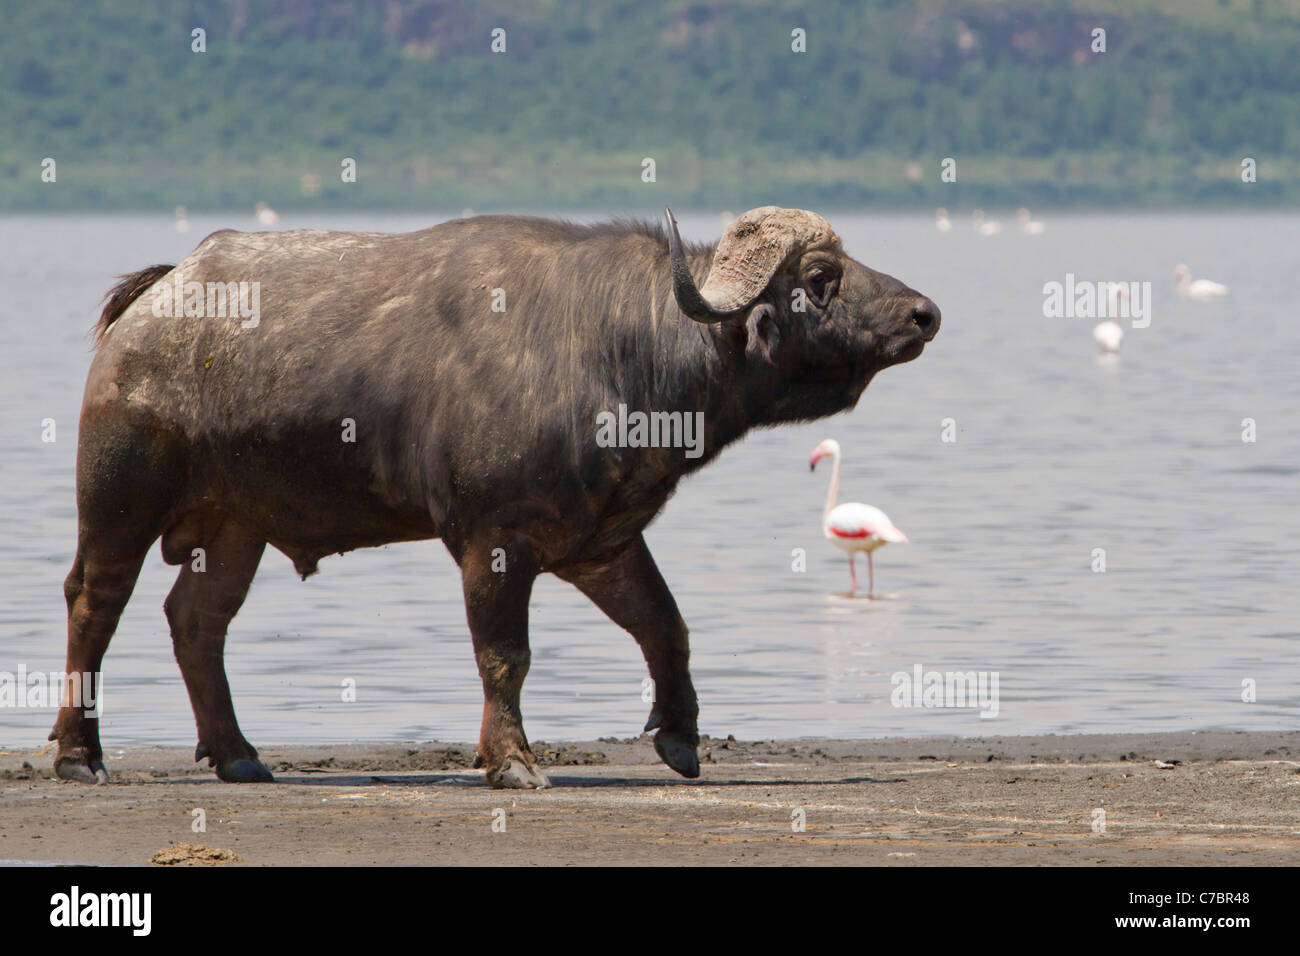 El búfalo africano (Syncerus caffer) en la costa del lago Elementaita. Foto de stock